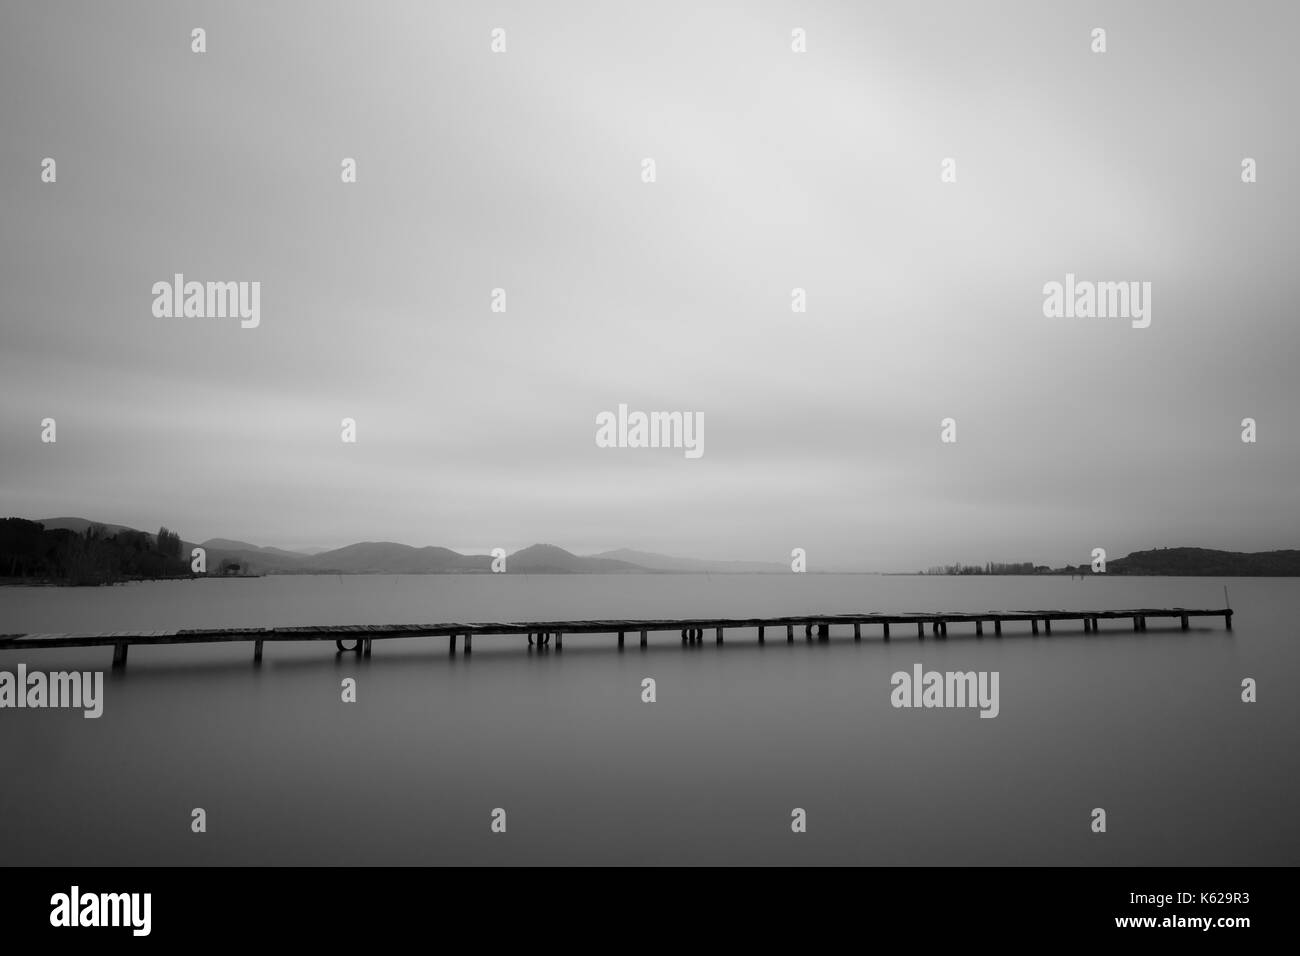 Minimalistische Ansicht eines langen Pier an einem See, mit perfekt noch Wasser und viel leerer Raum Stockfoto